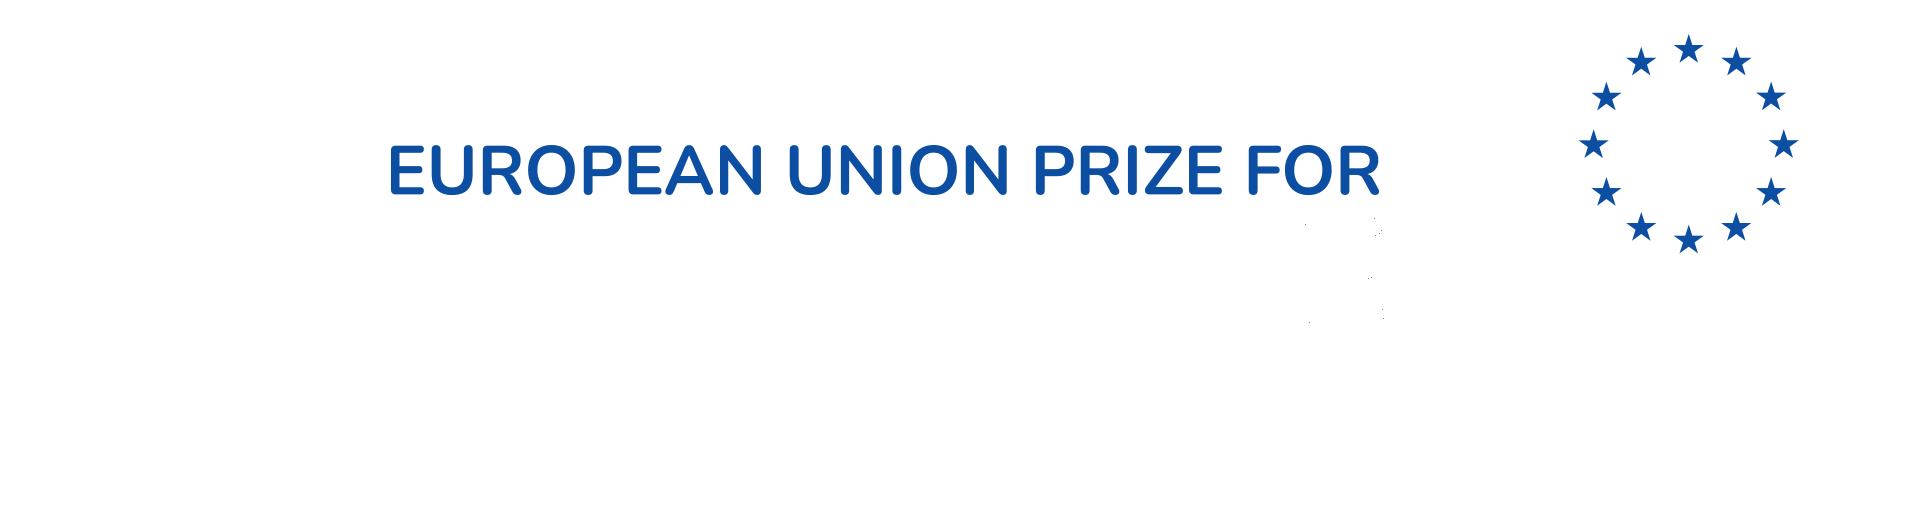 logo menzione d'onere europea per la citizen science